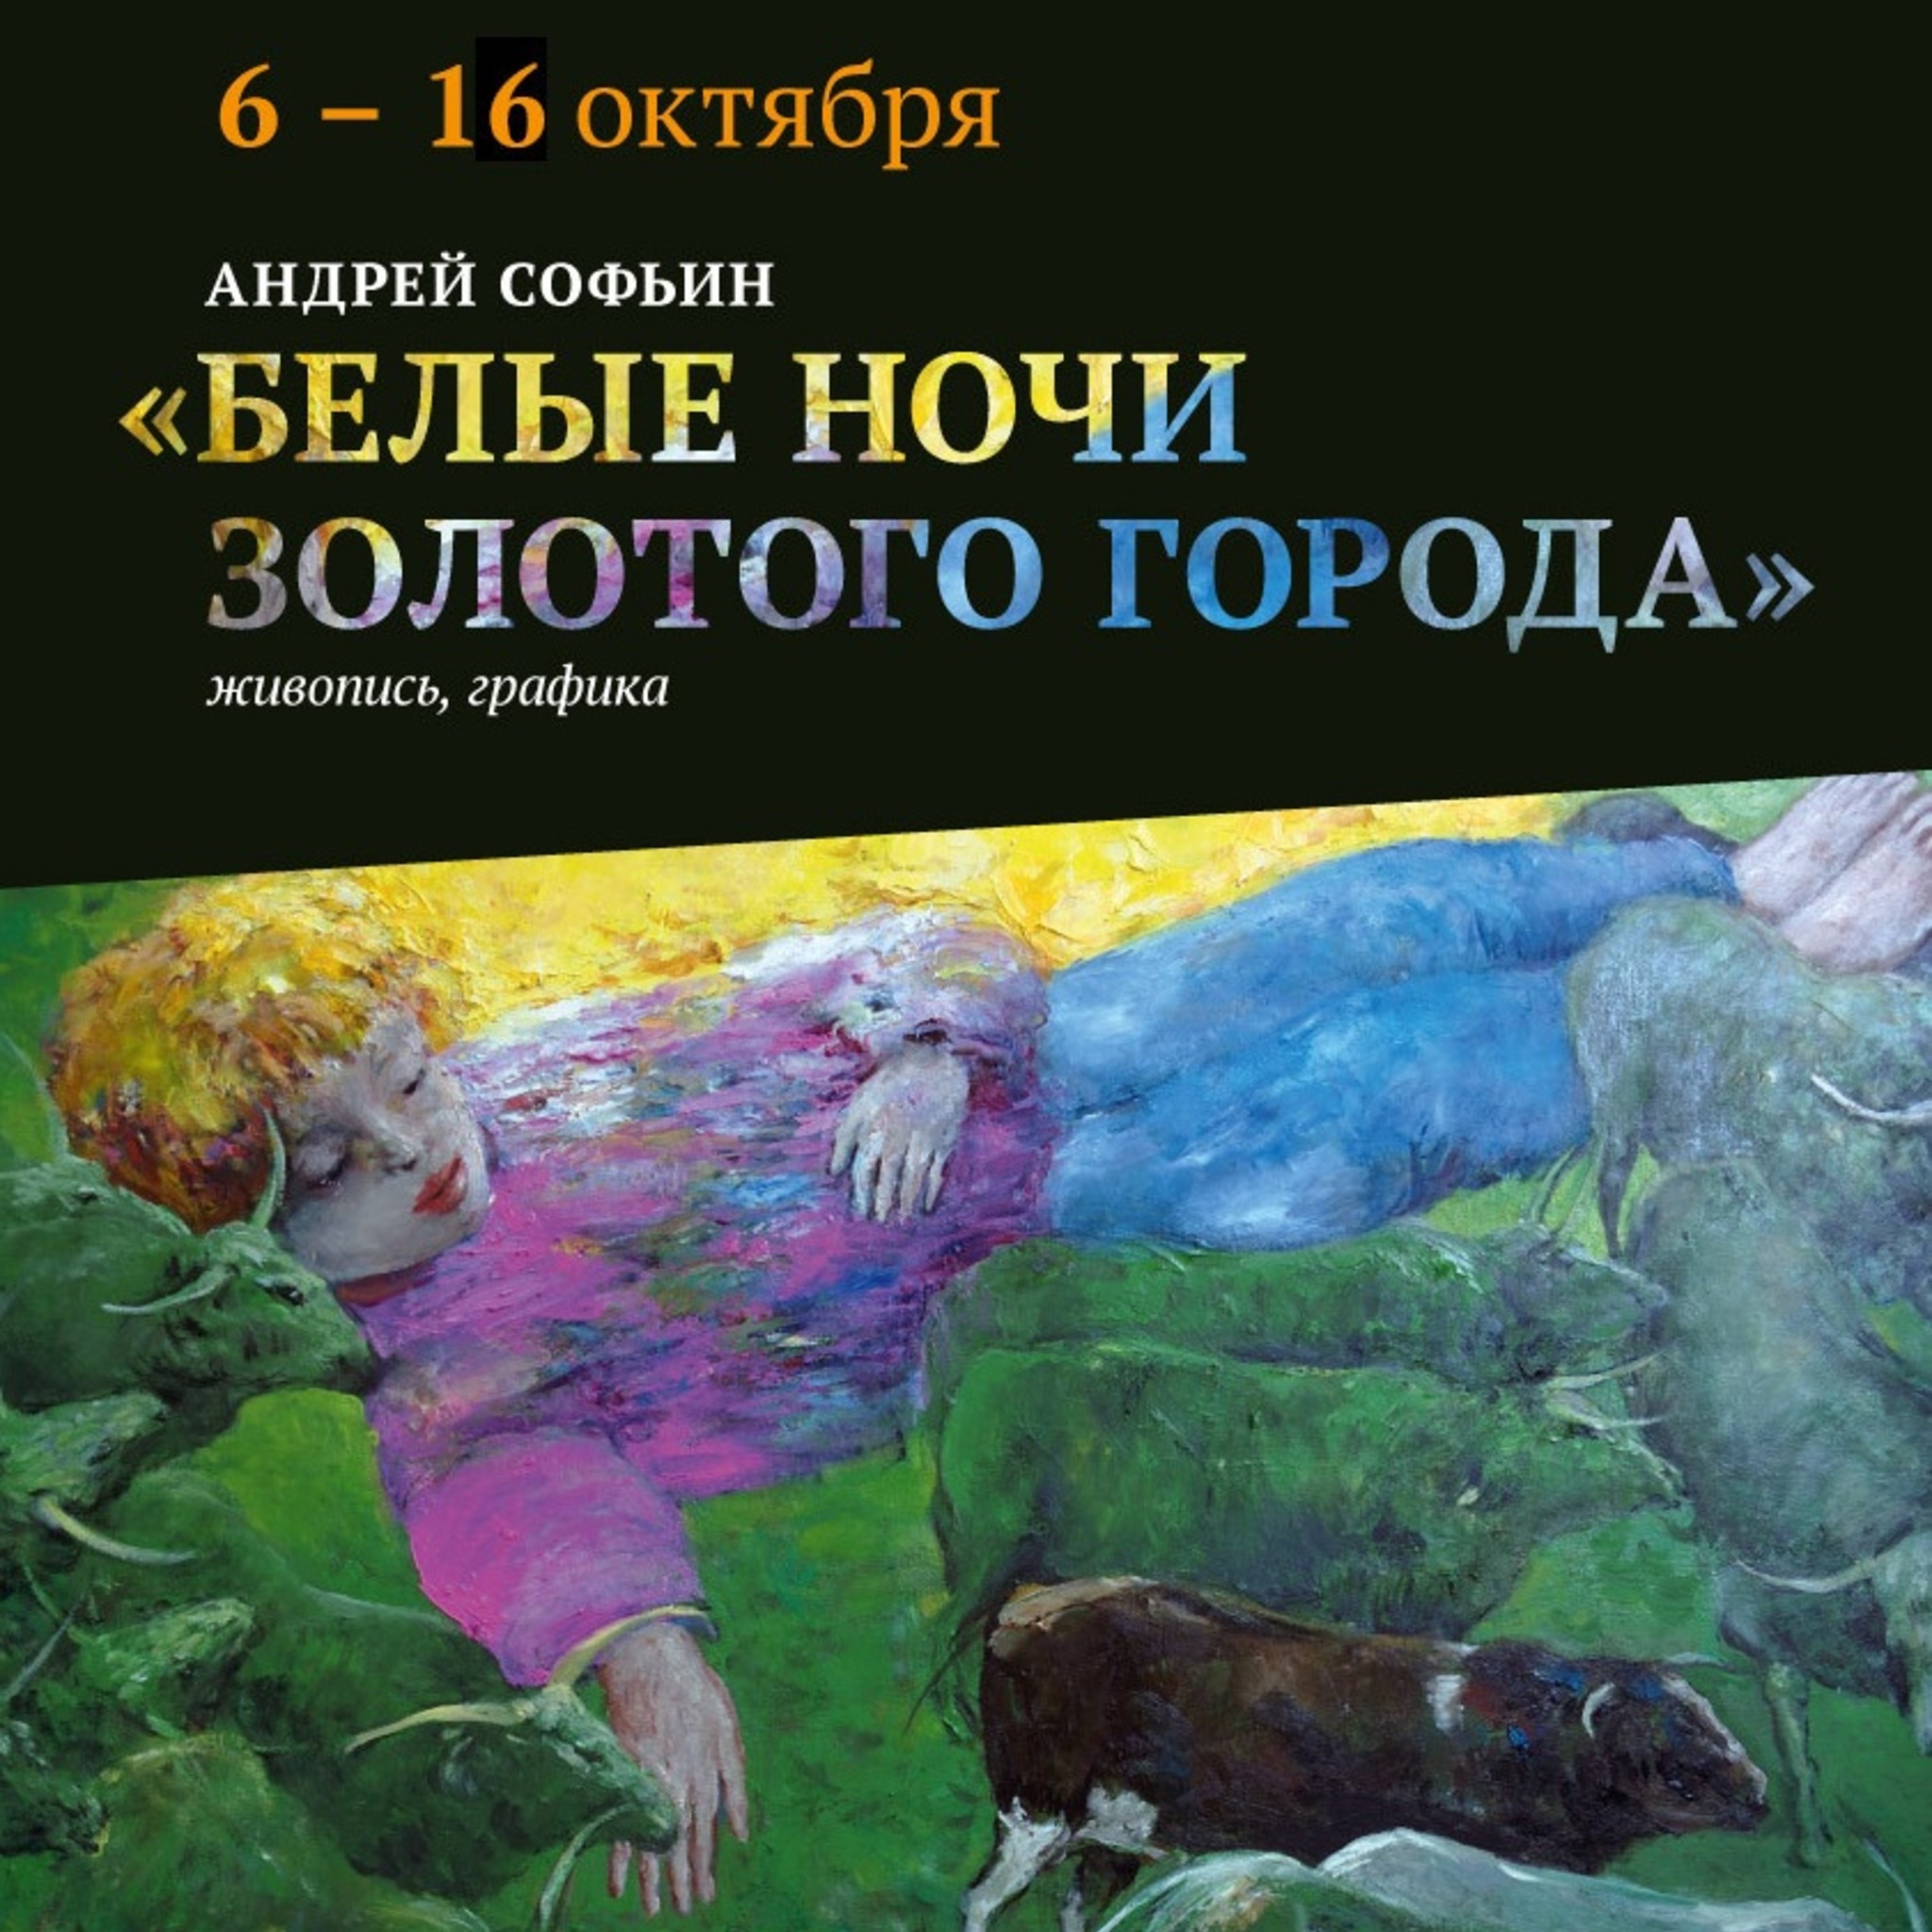 Exhibition of artist Andrei Savin White Nights golden city